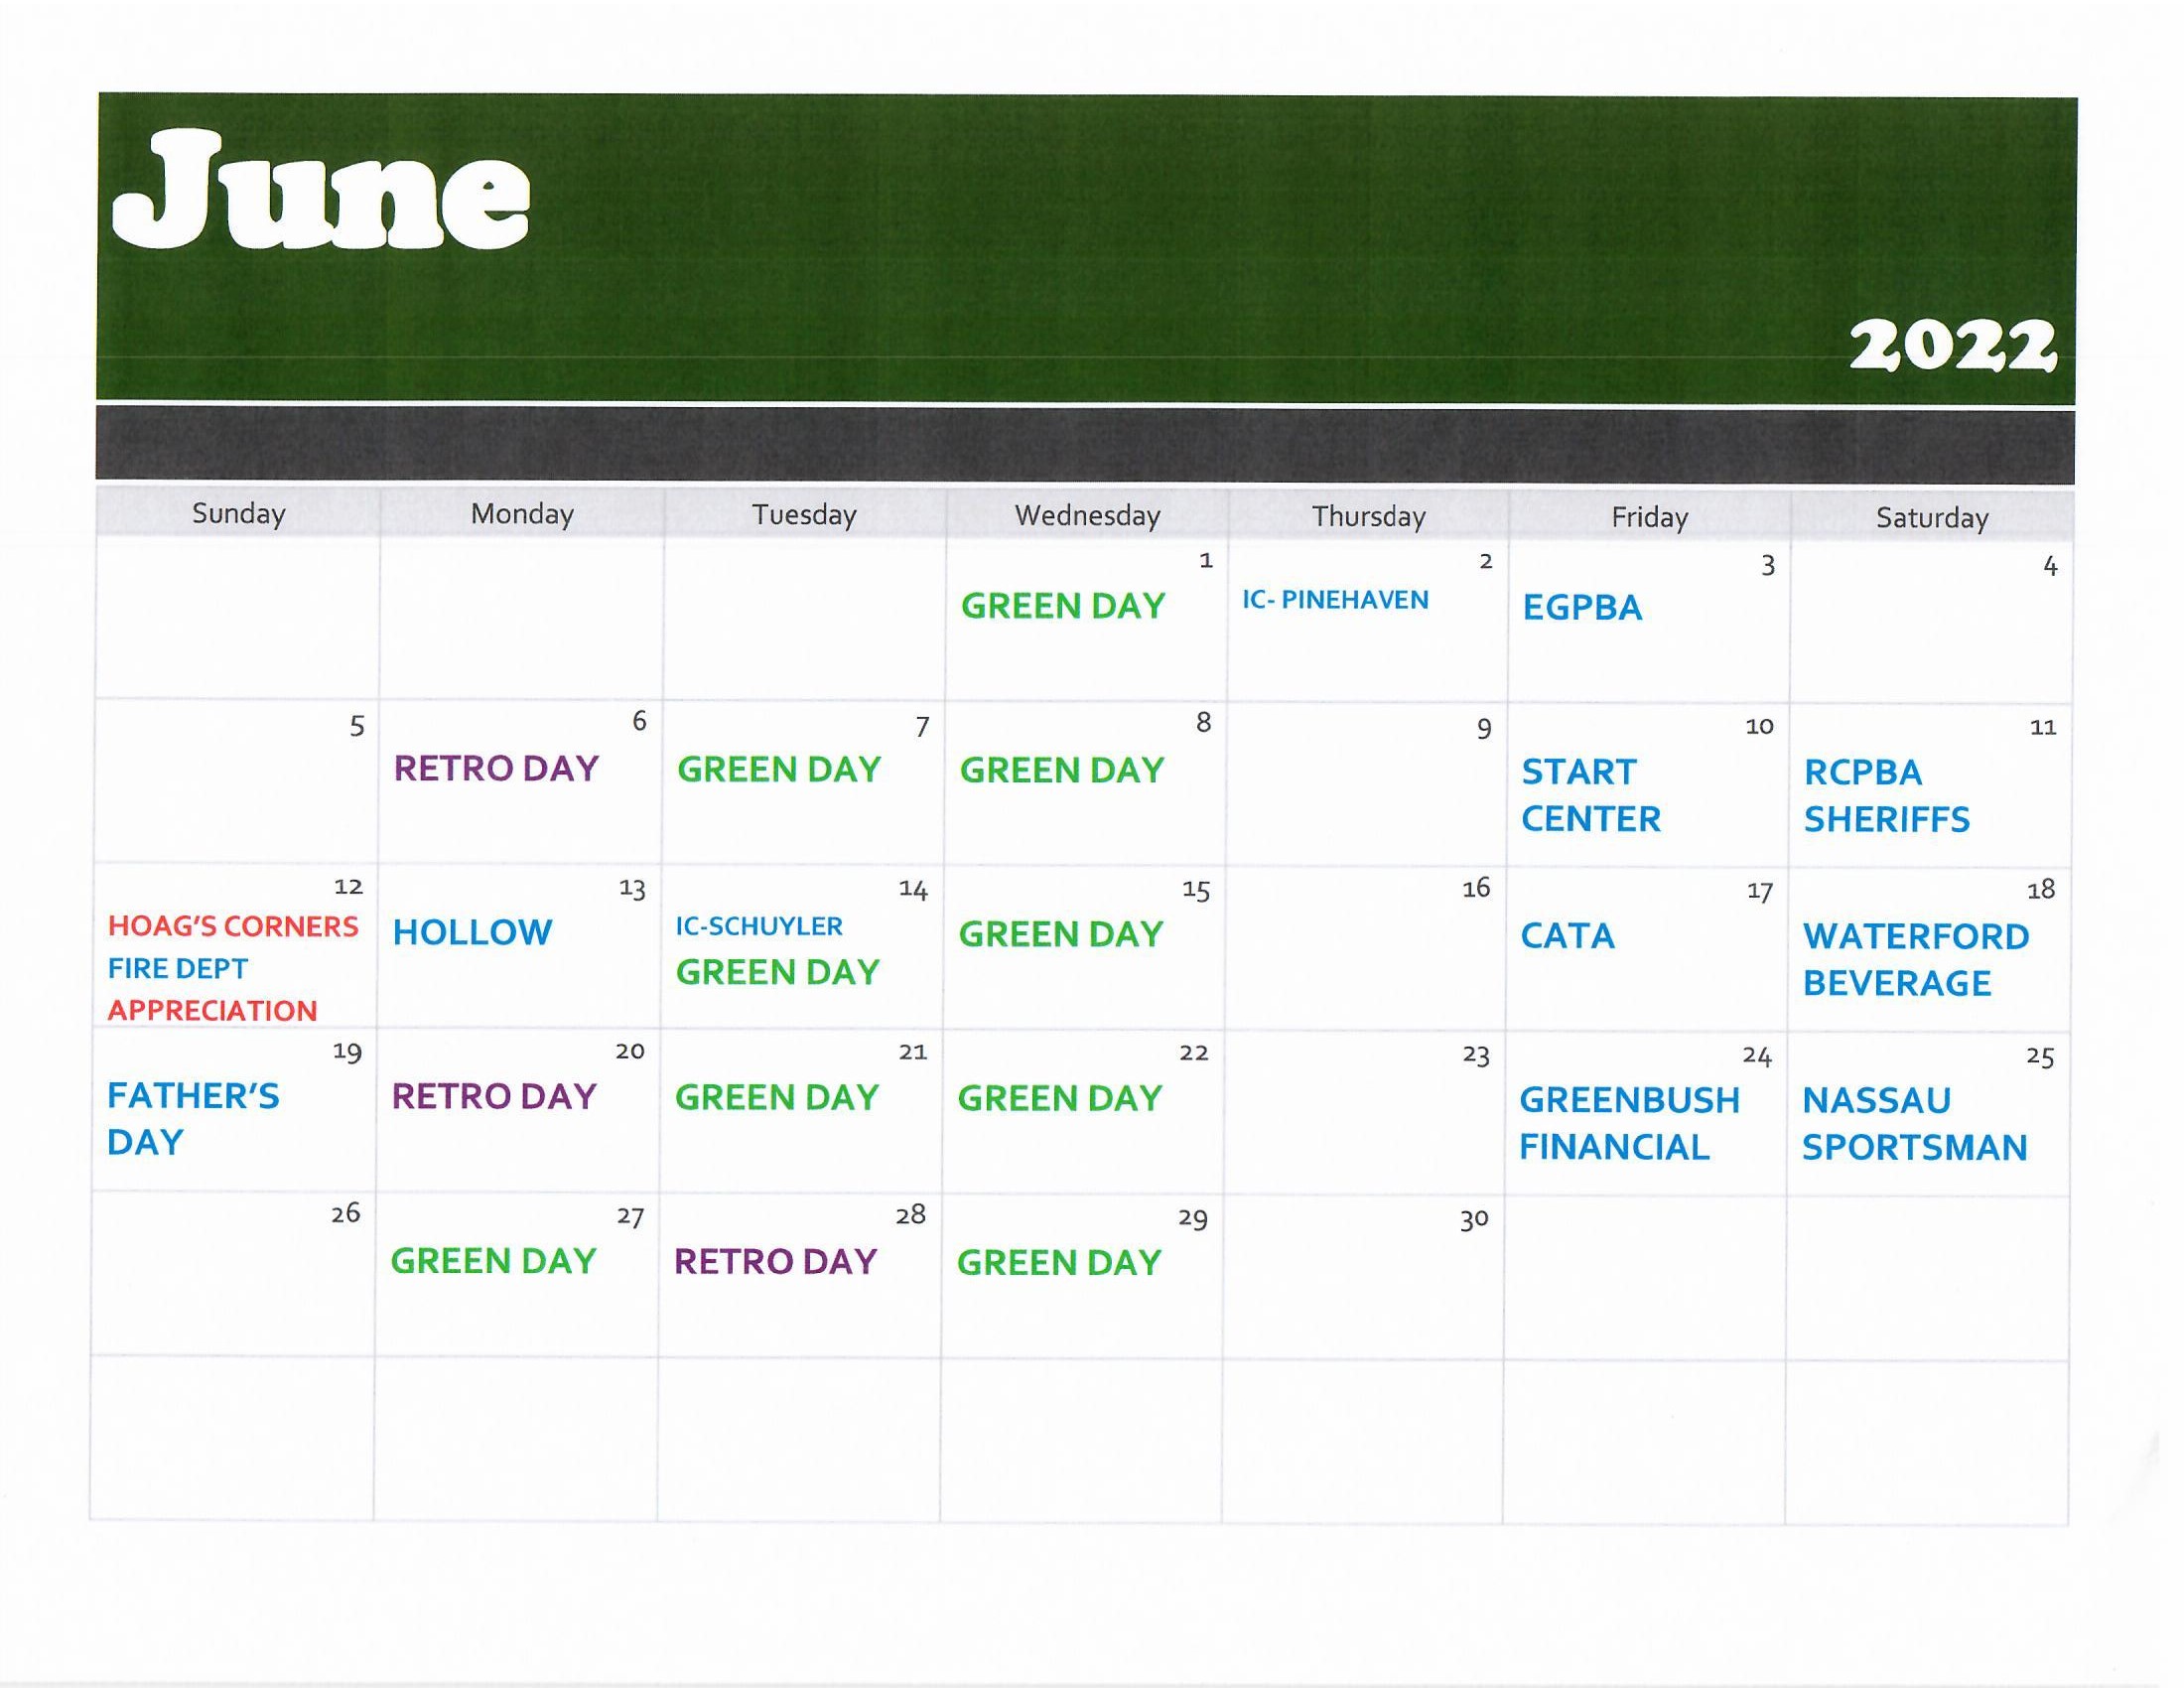 June golf calendar